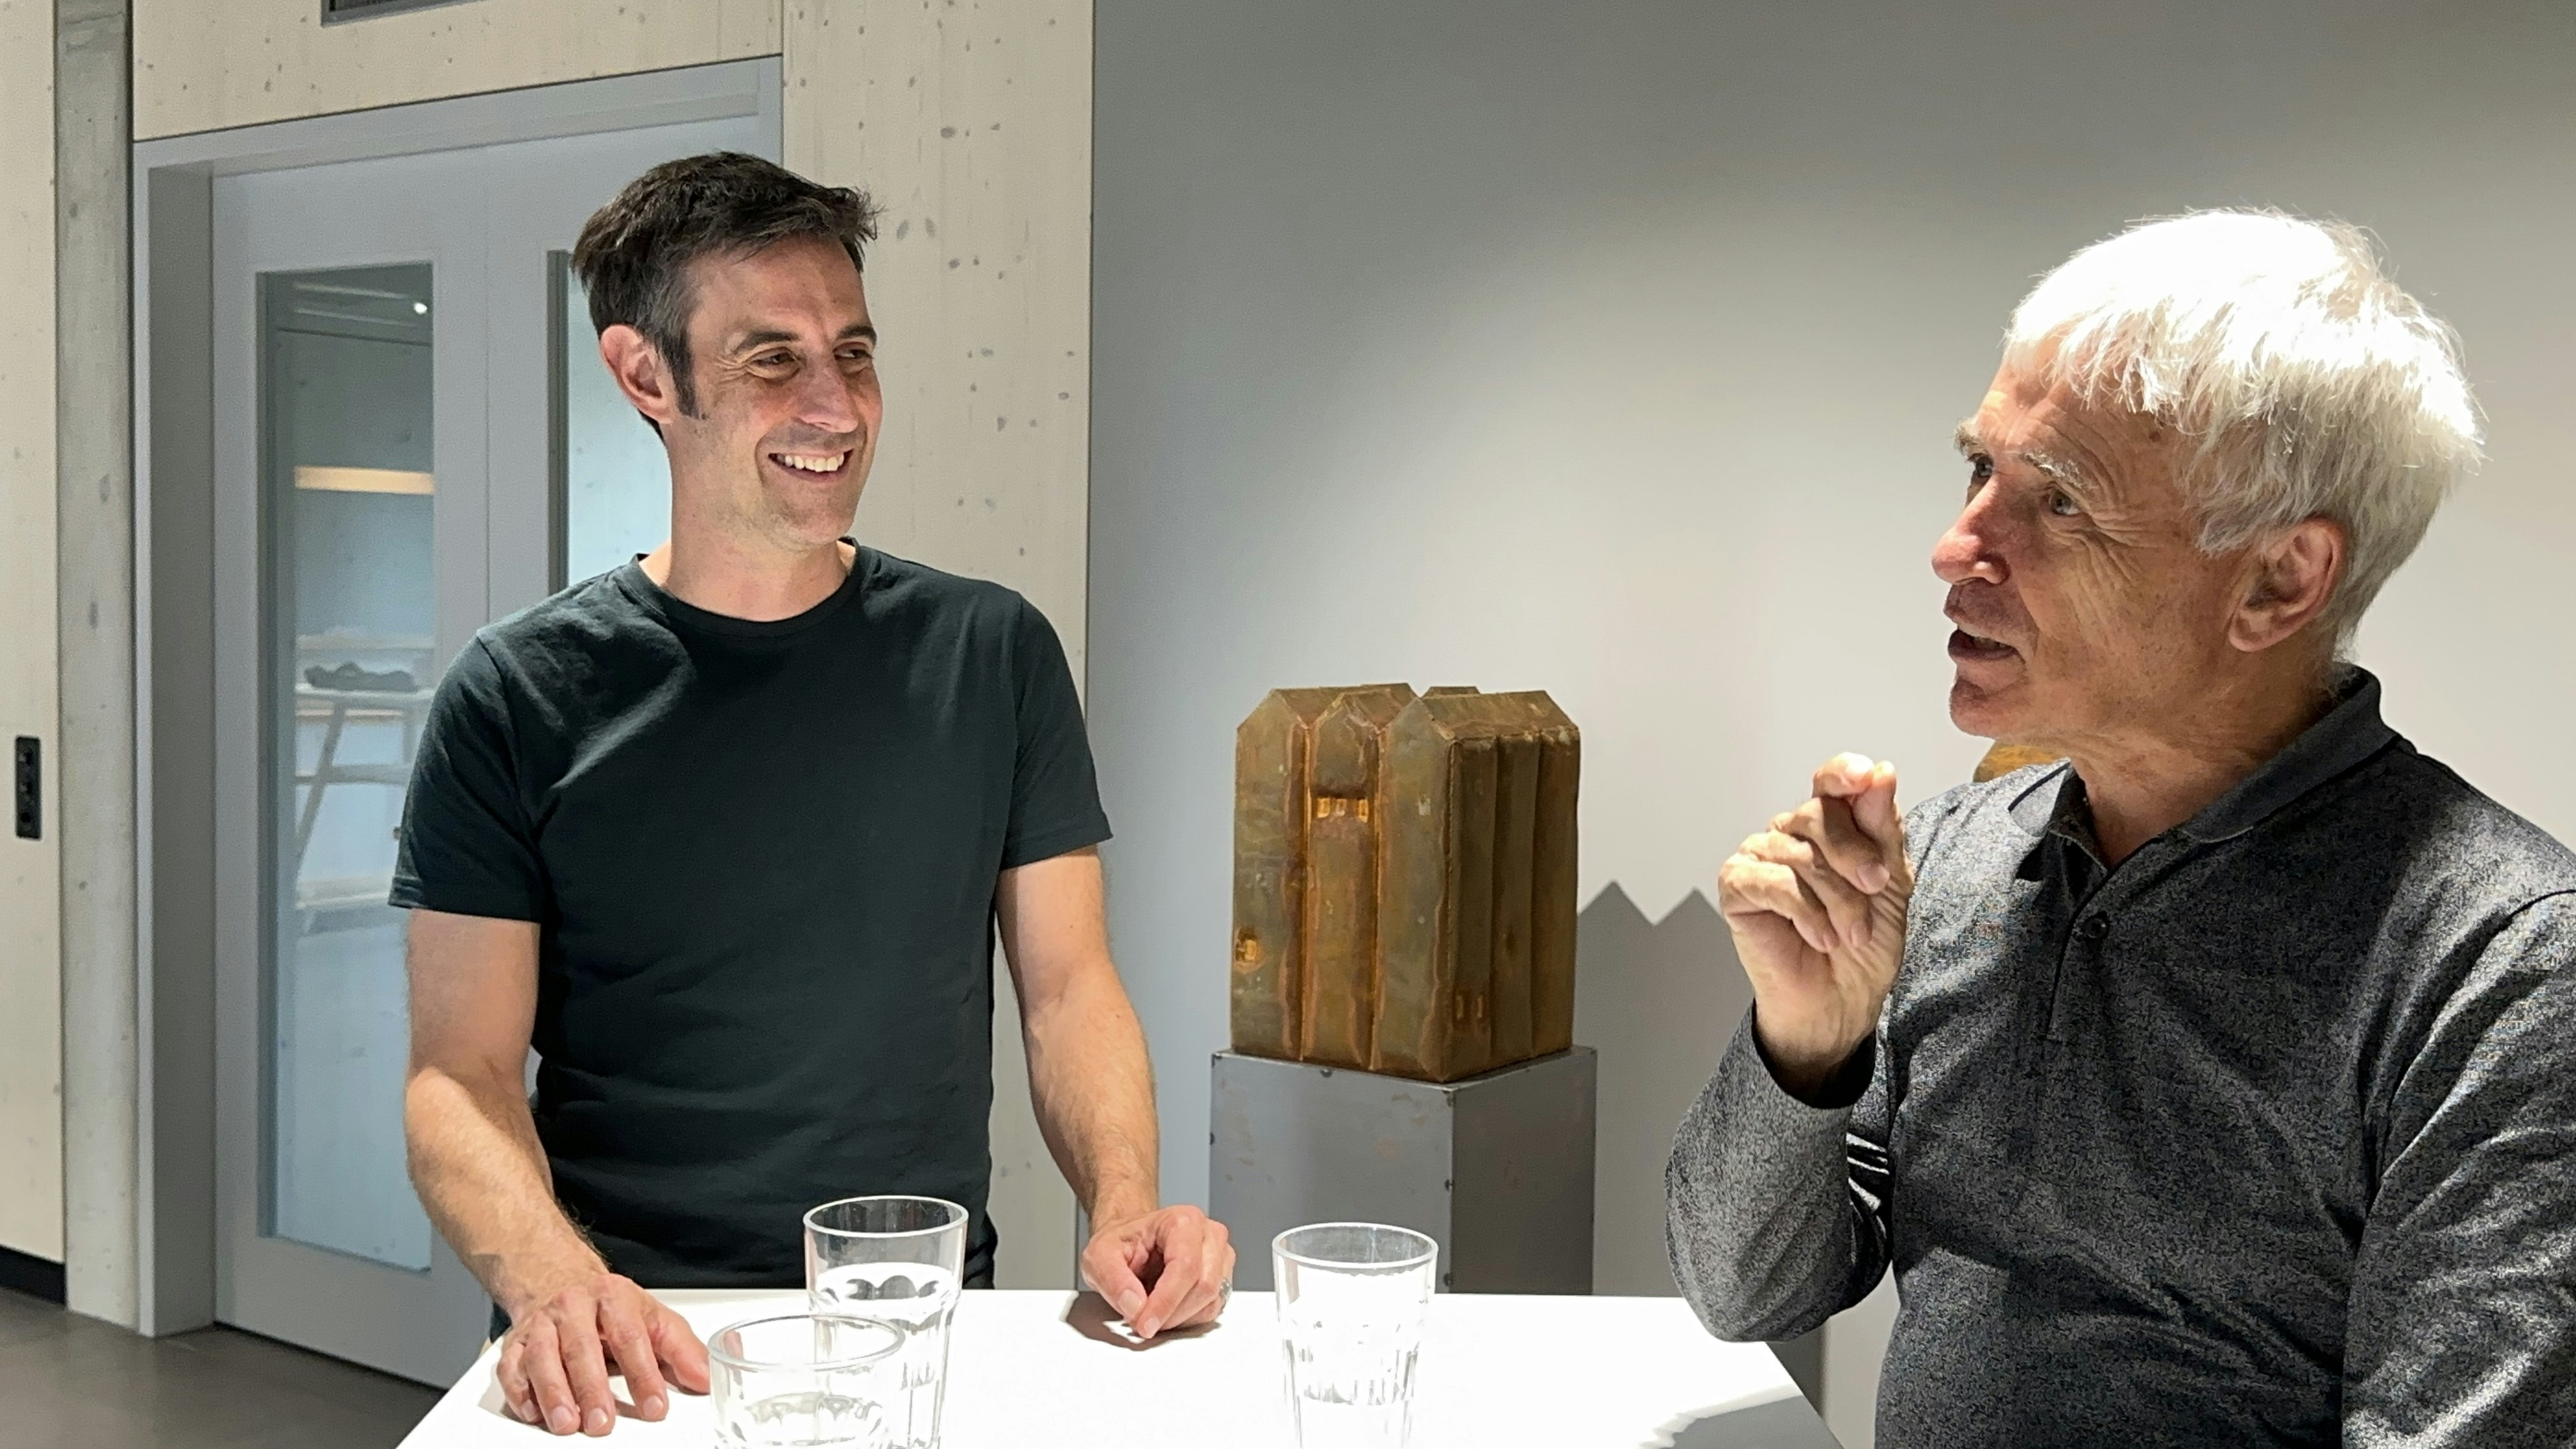 Christian Bühlmann and Stefan Berner being interviewed